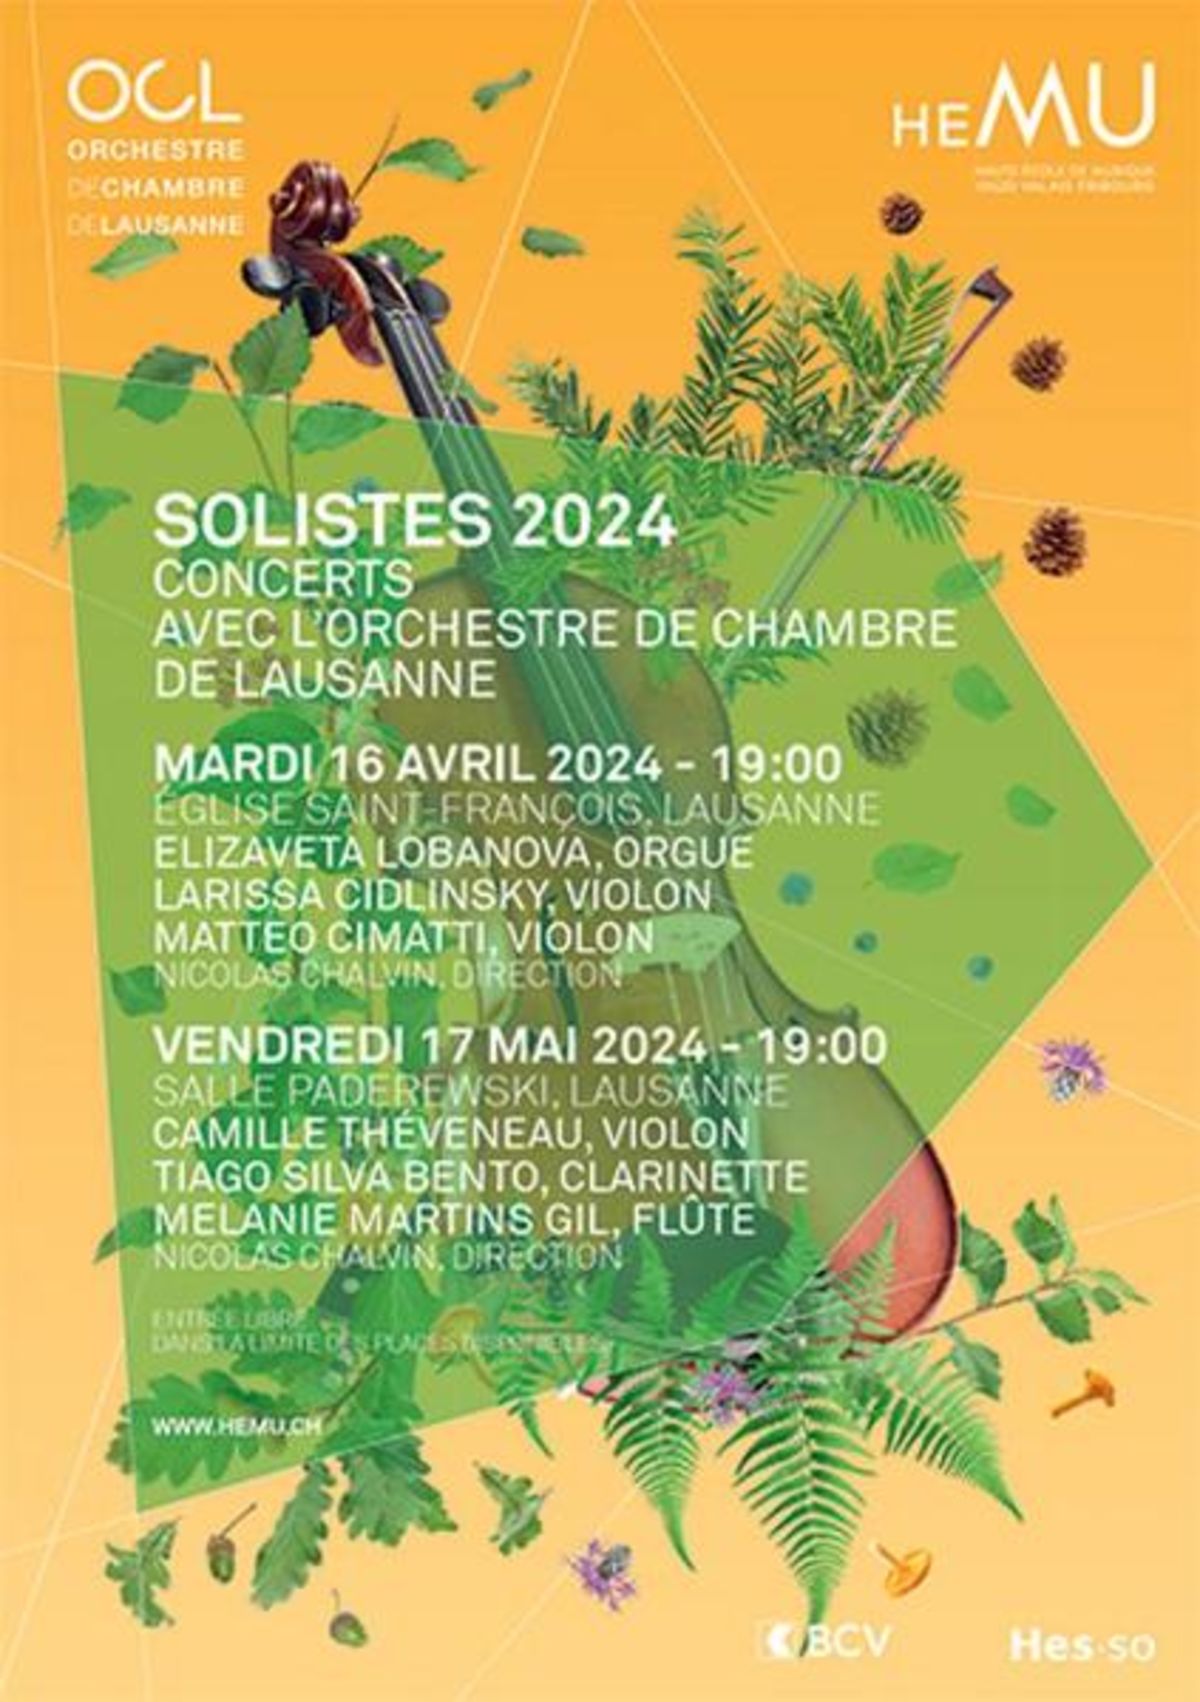 Solistes 2024 - 1er concert avec l'OCL